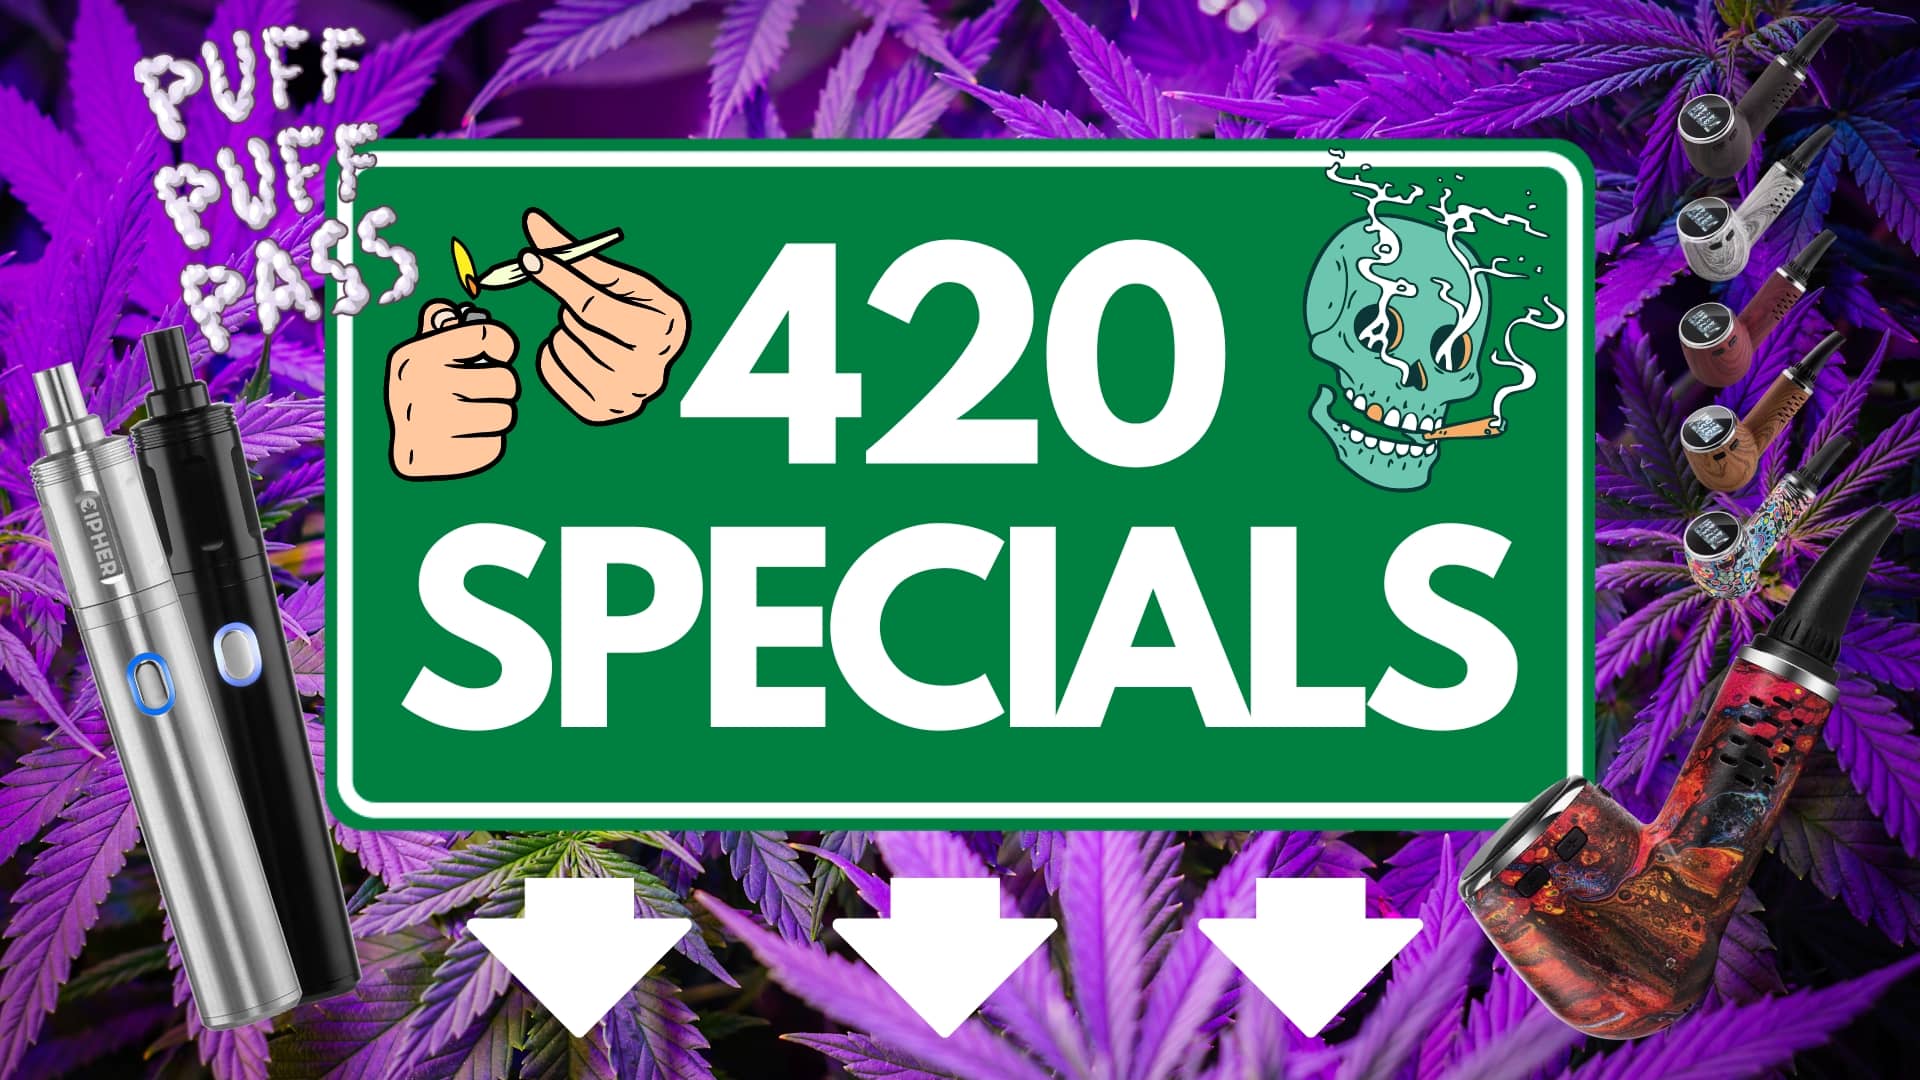 Cipher 420 specials banner